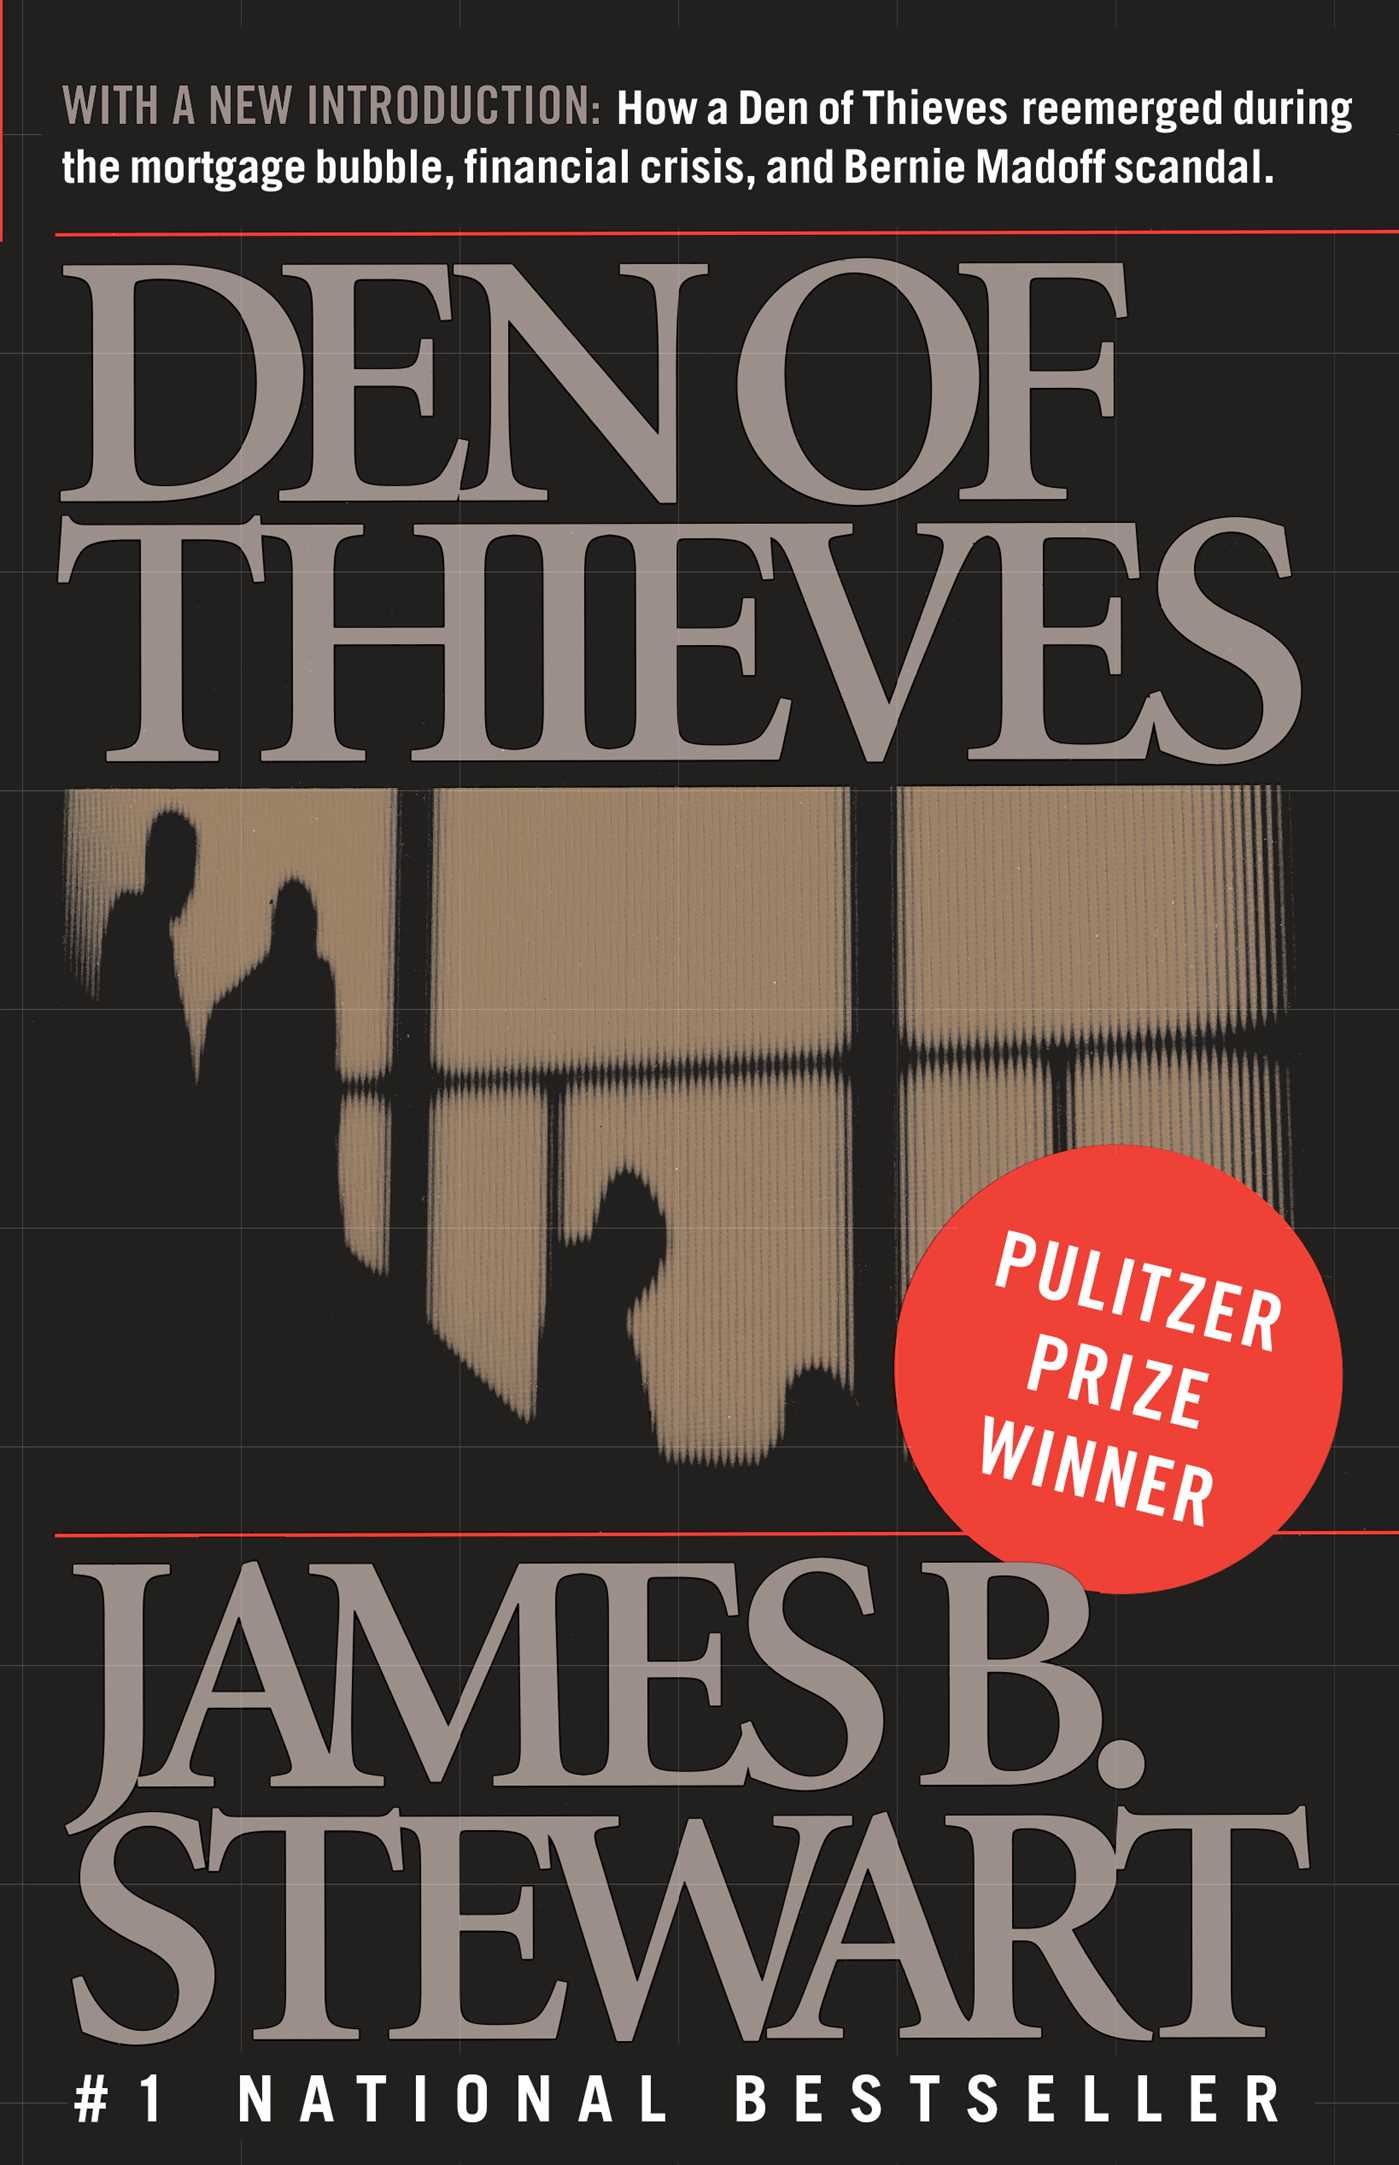 James B. Stewart: Den of thieves (1992, Simon & Schuster)